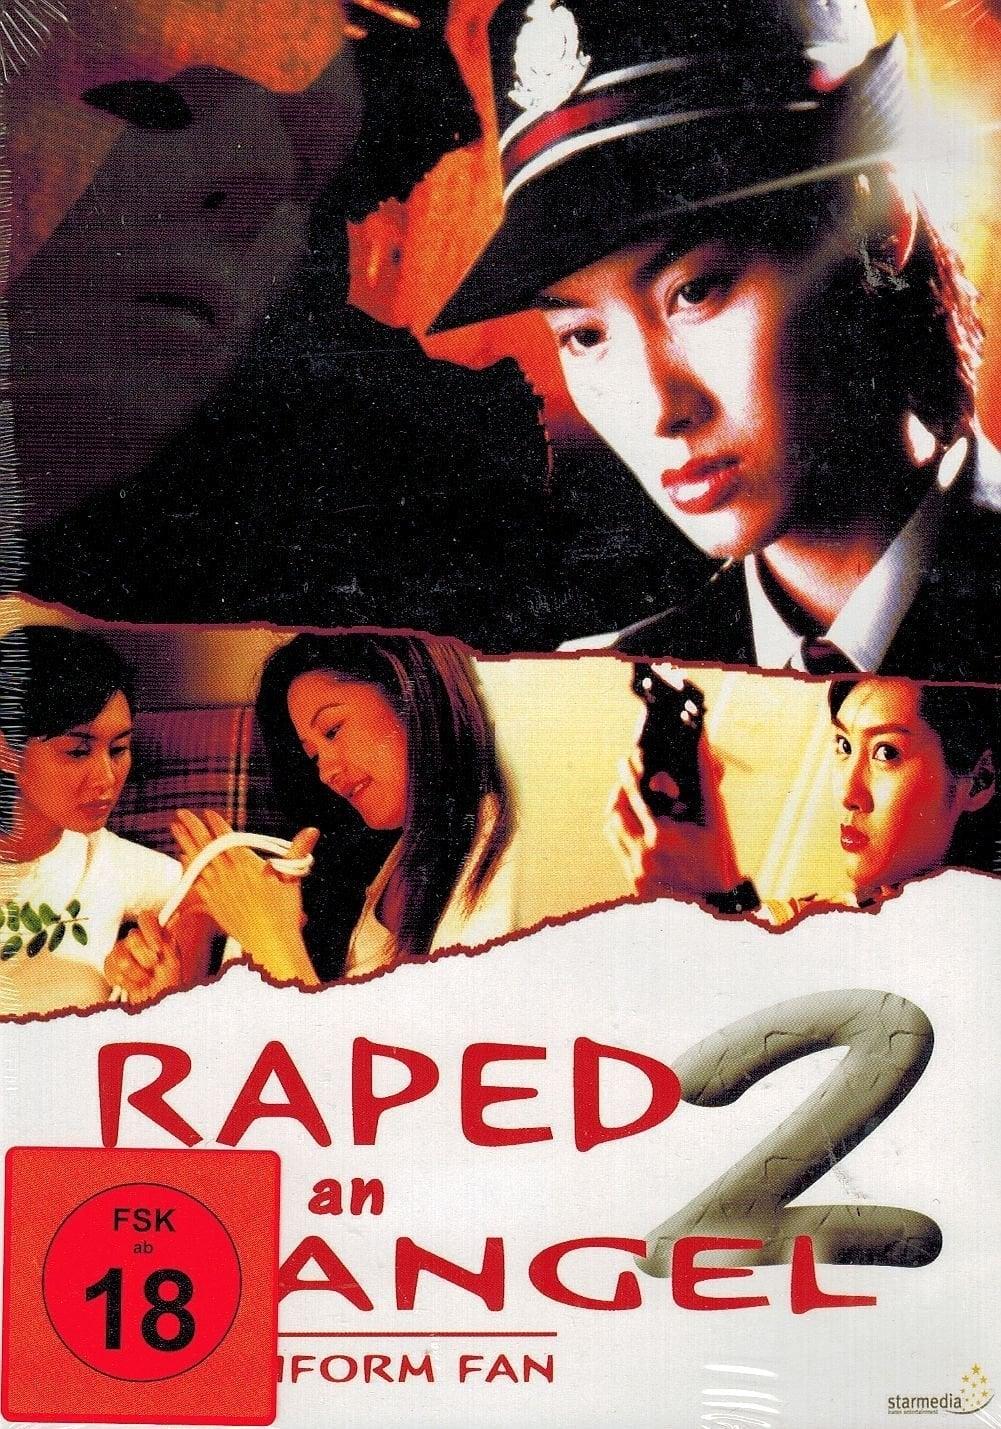 Raped by an Angel 2 - The Uniform Fan poster